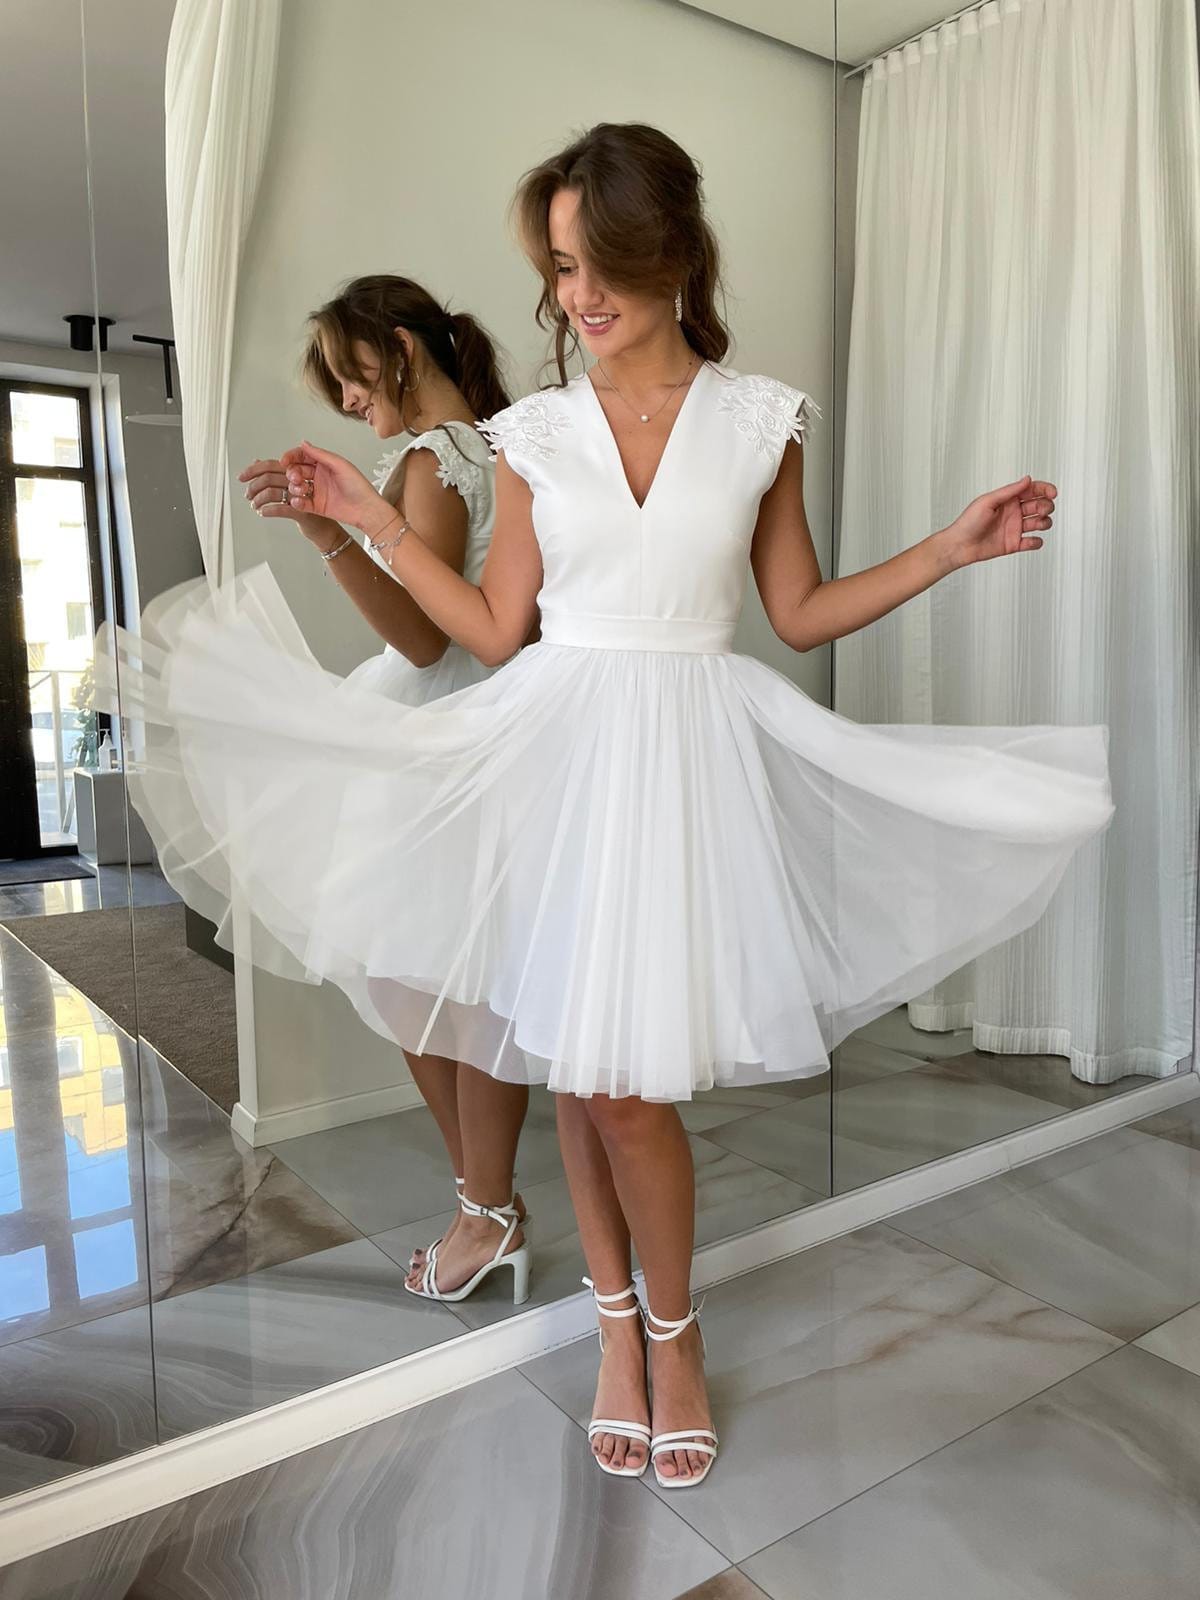 Tulle White Dress, Short Wedding Dress, White Cocktail Tutu Dress, Simple  Wedding Dress, White Cocktail Dress, A-line Wedding Dress, XS L 